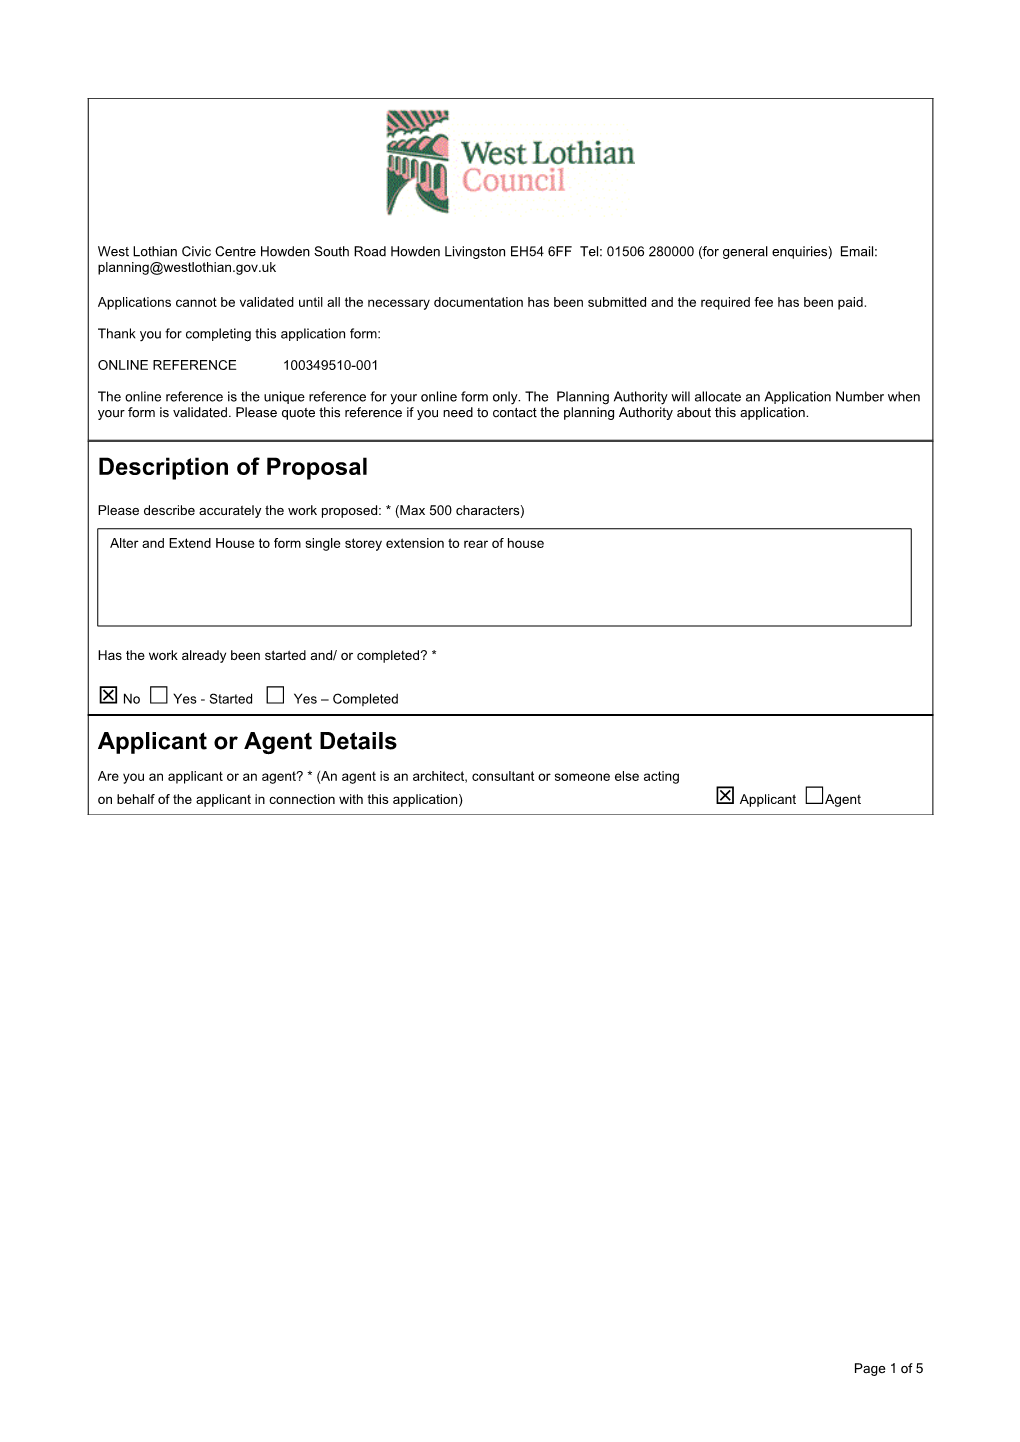 Description of Proposal Applicant Or Agent Details